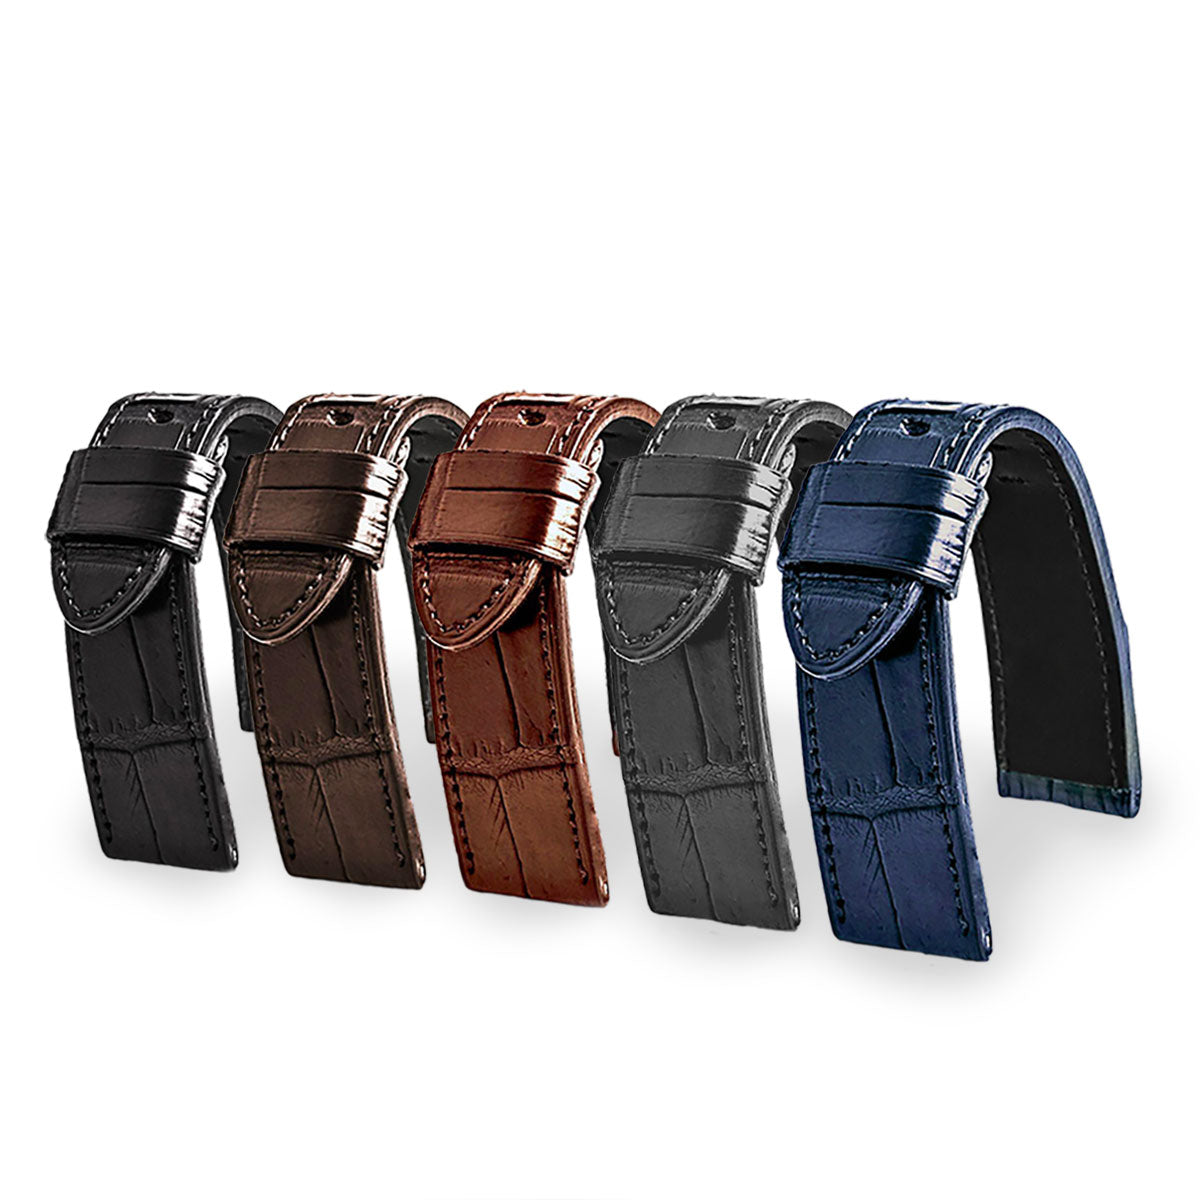 Panerai Luminor - Bracelet de montre cuir - Alligator (noir, marron, gris, bleu) - watch band leather strap - ABP Concept -